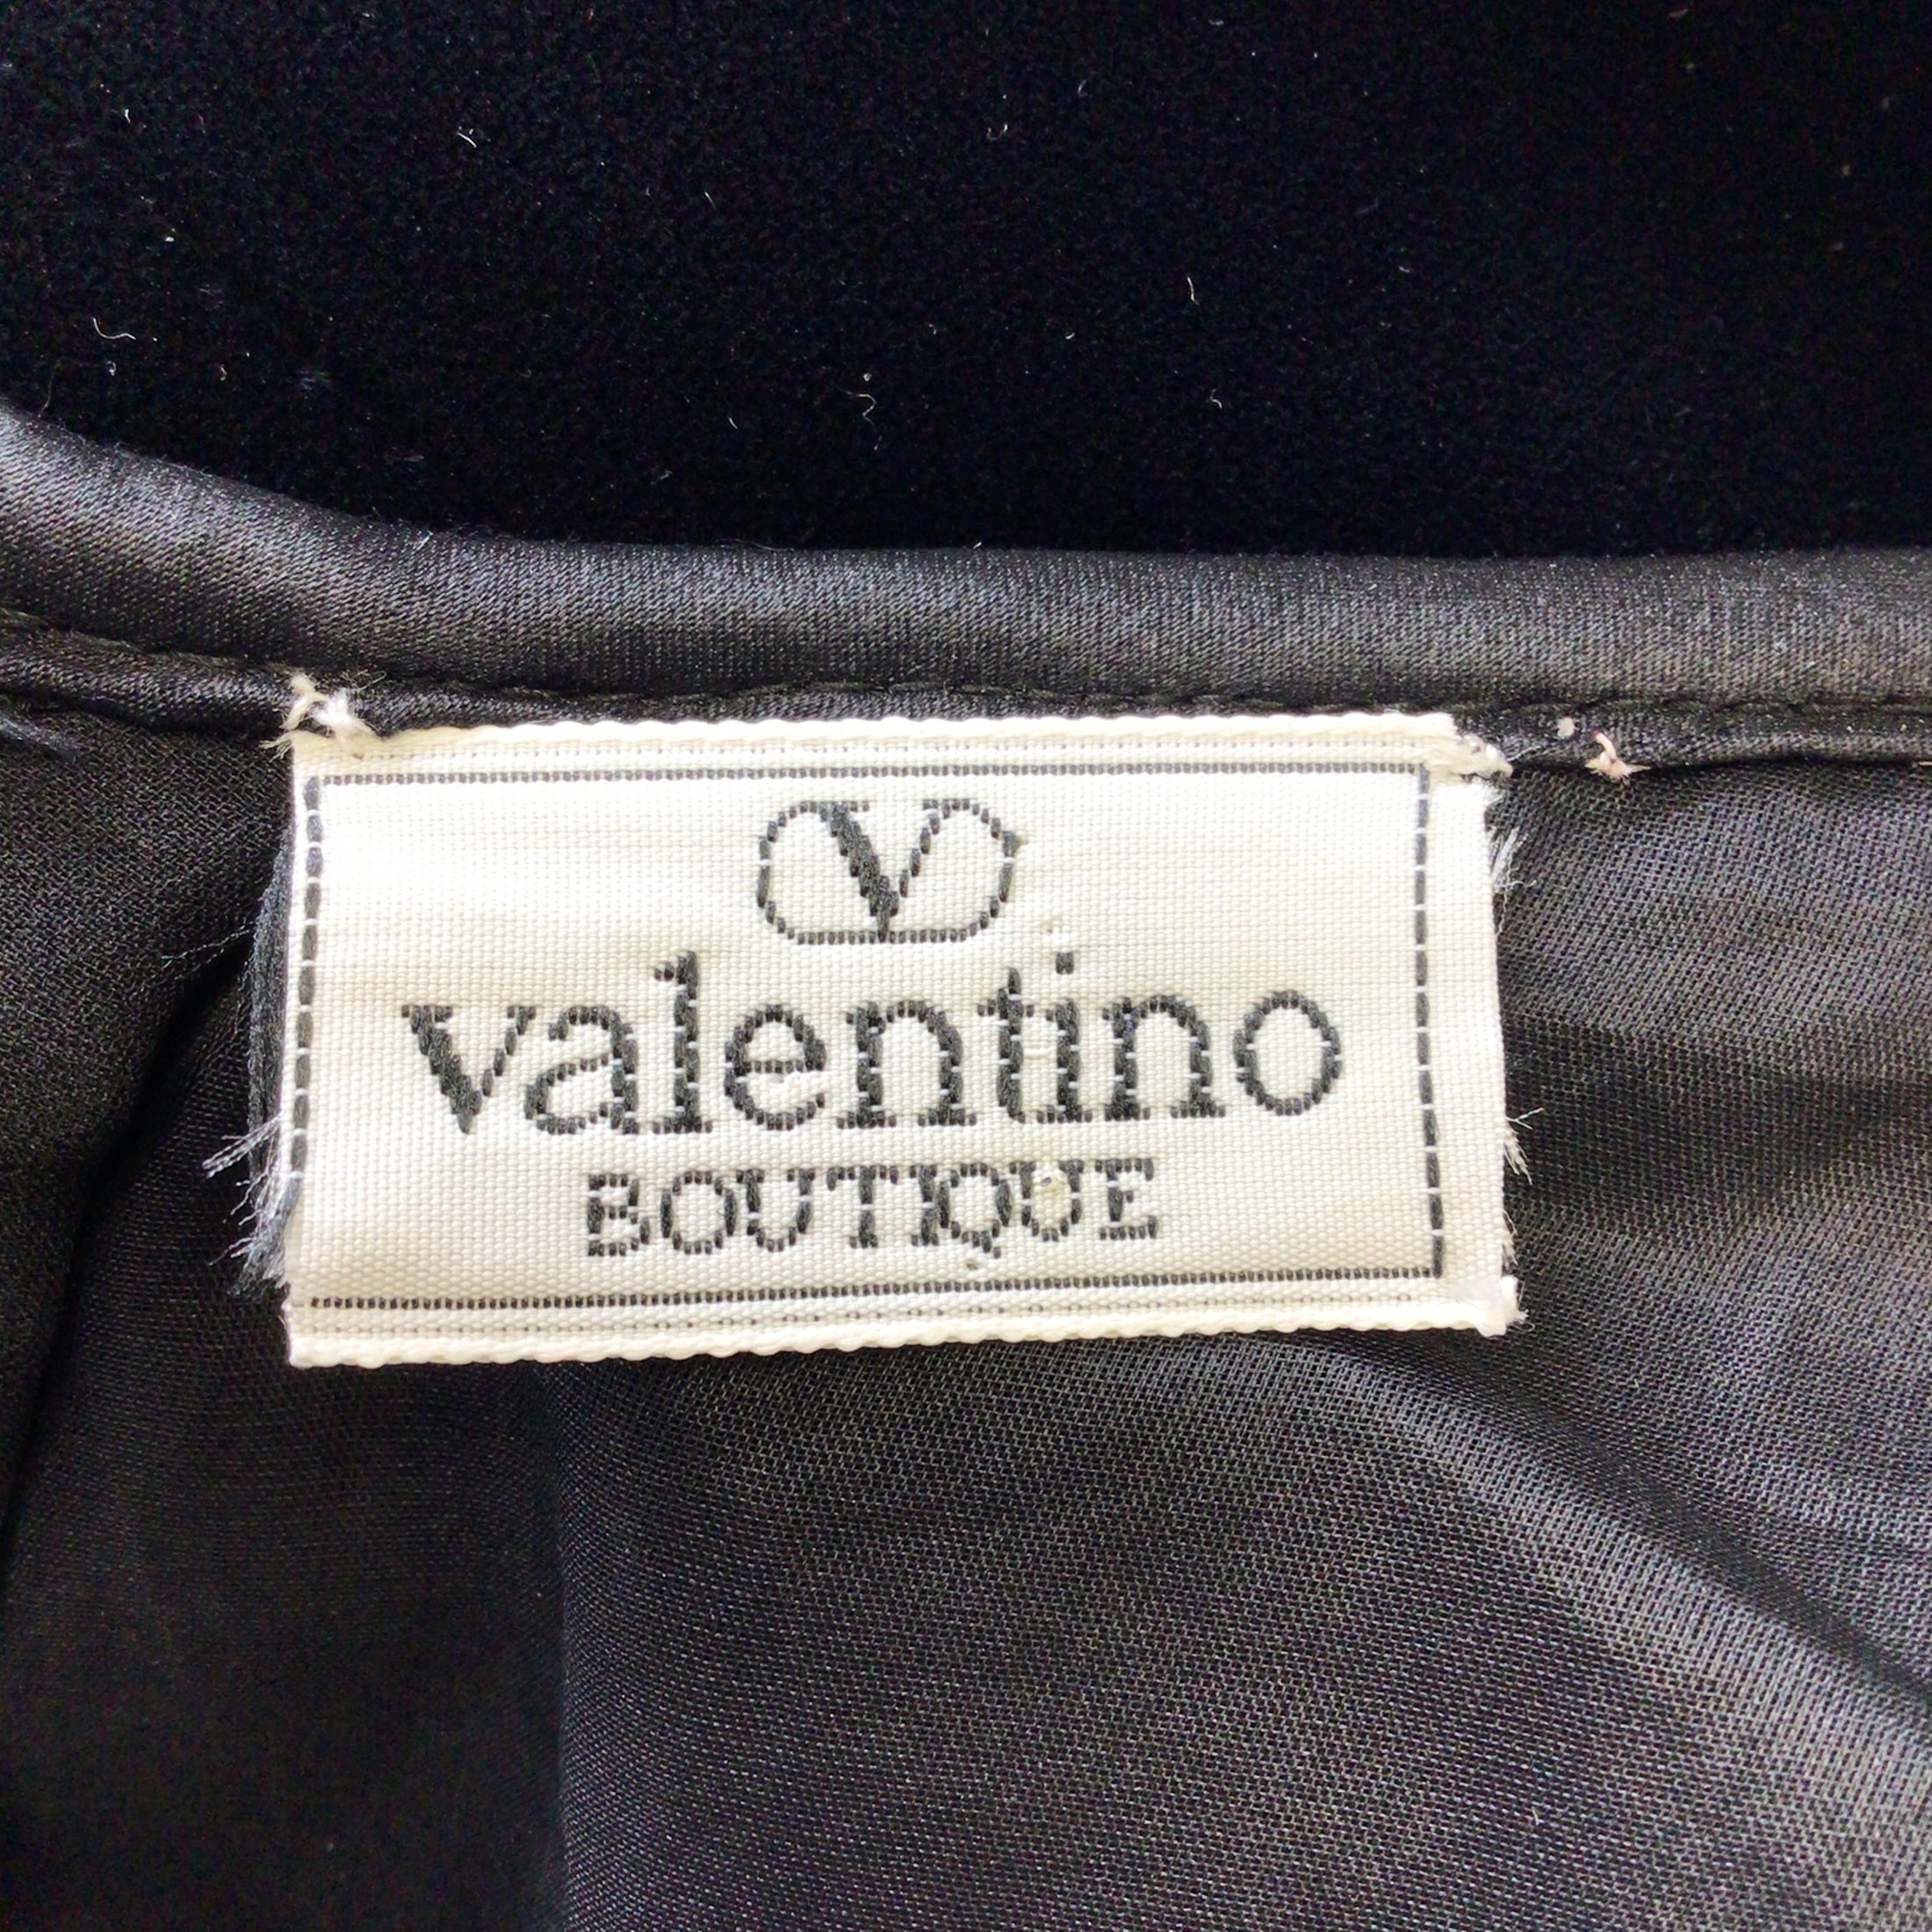 Valentino Boutique Vintage Black / Pink Satin Bow Detail Long Sleeved V-Neck Velvet Dress